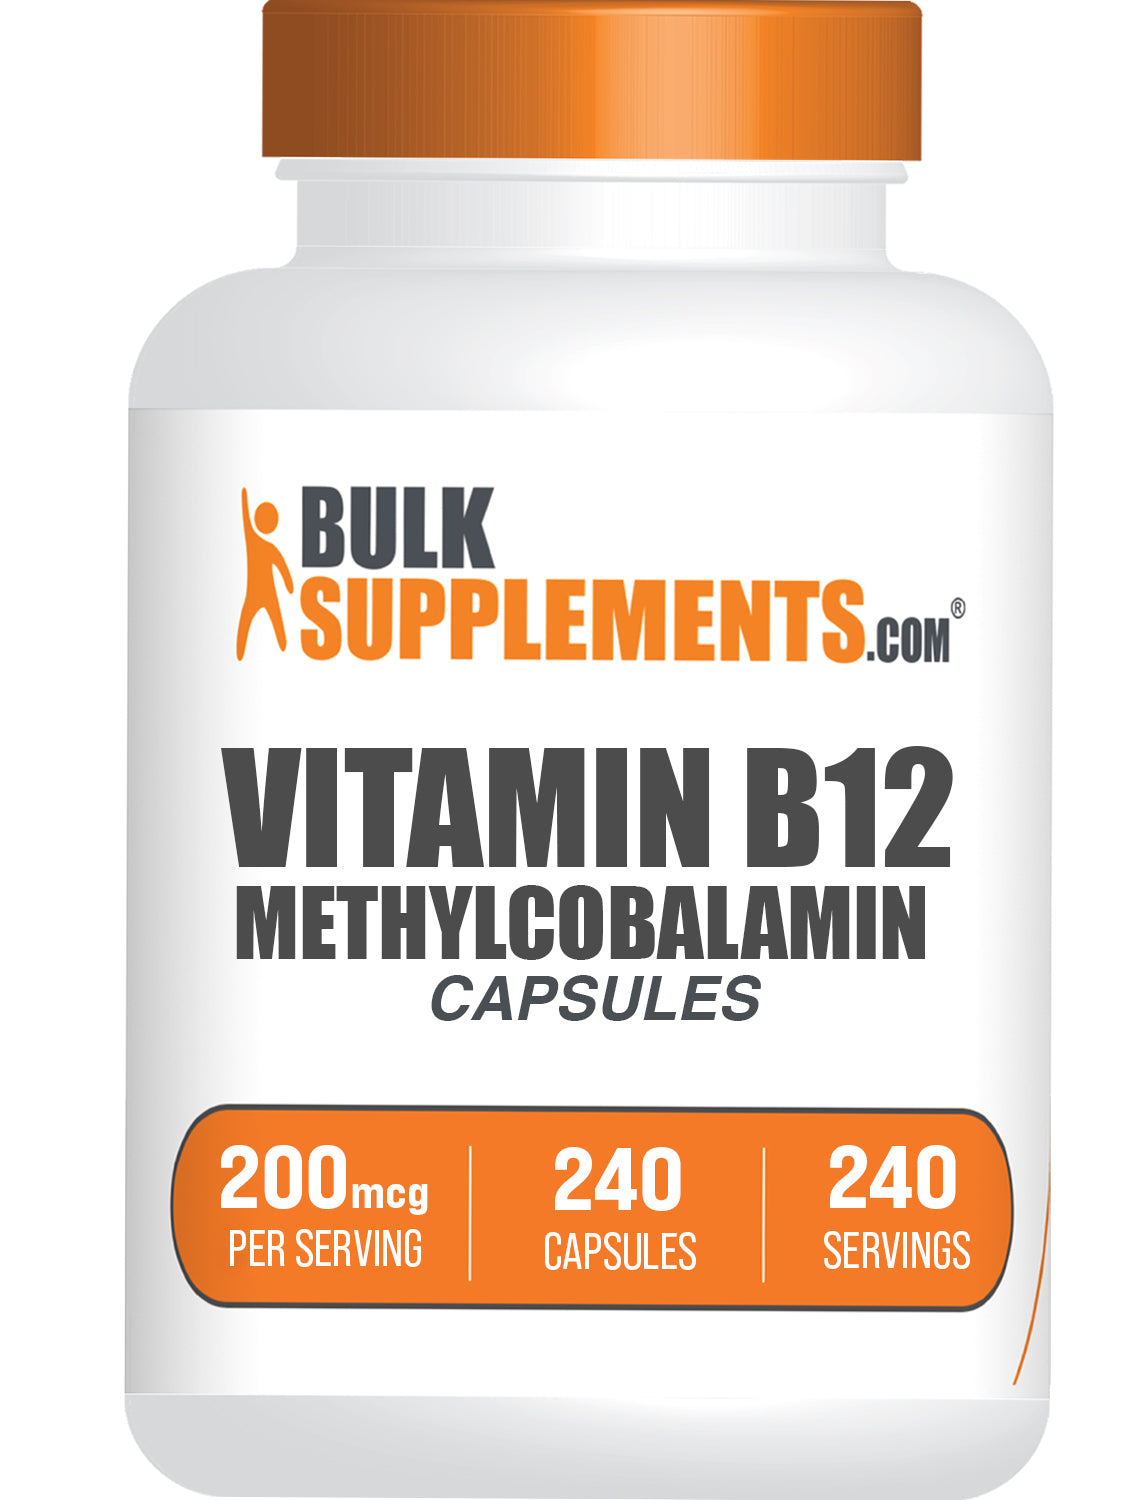 ビタミン B12 (1% メチルコバラミン) カプセル